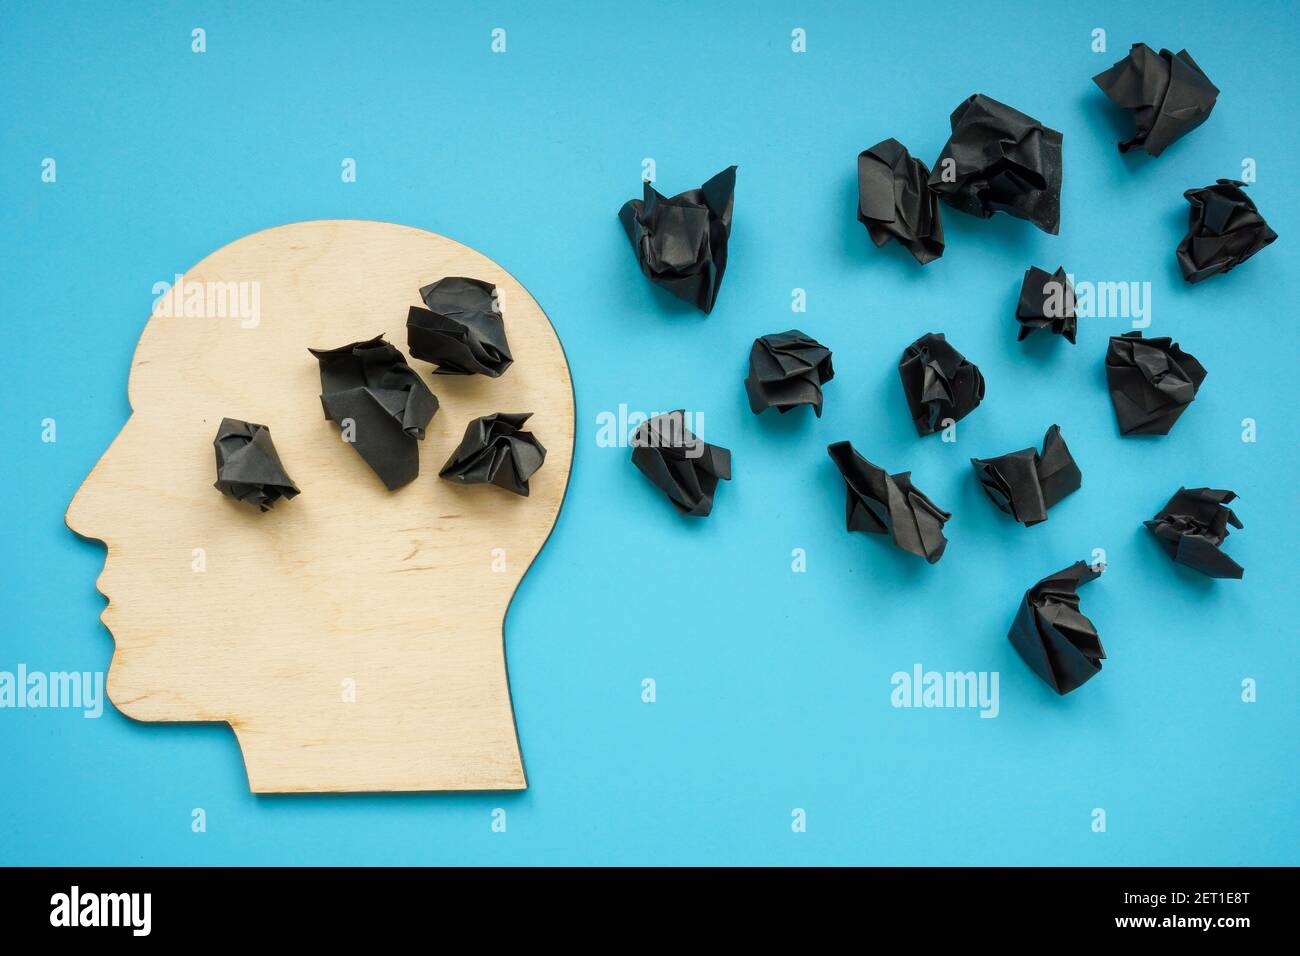 Forma de la cabeza con bolas de papel negro como símbolo de depresión y pensamientos negativos. Foto de stock